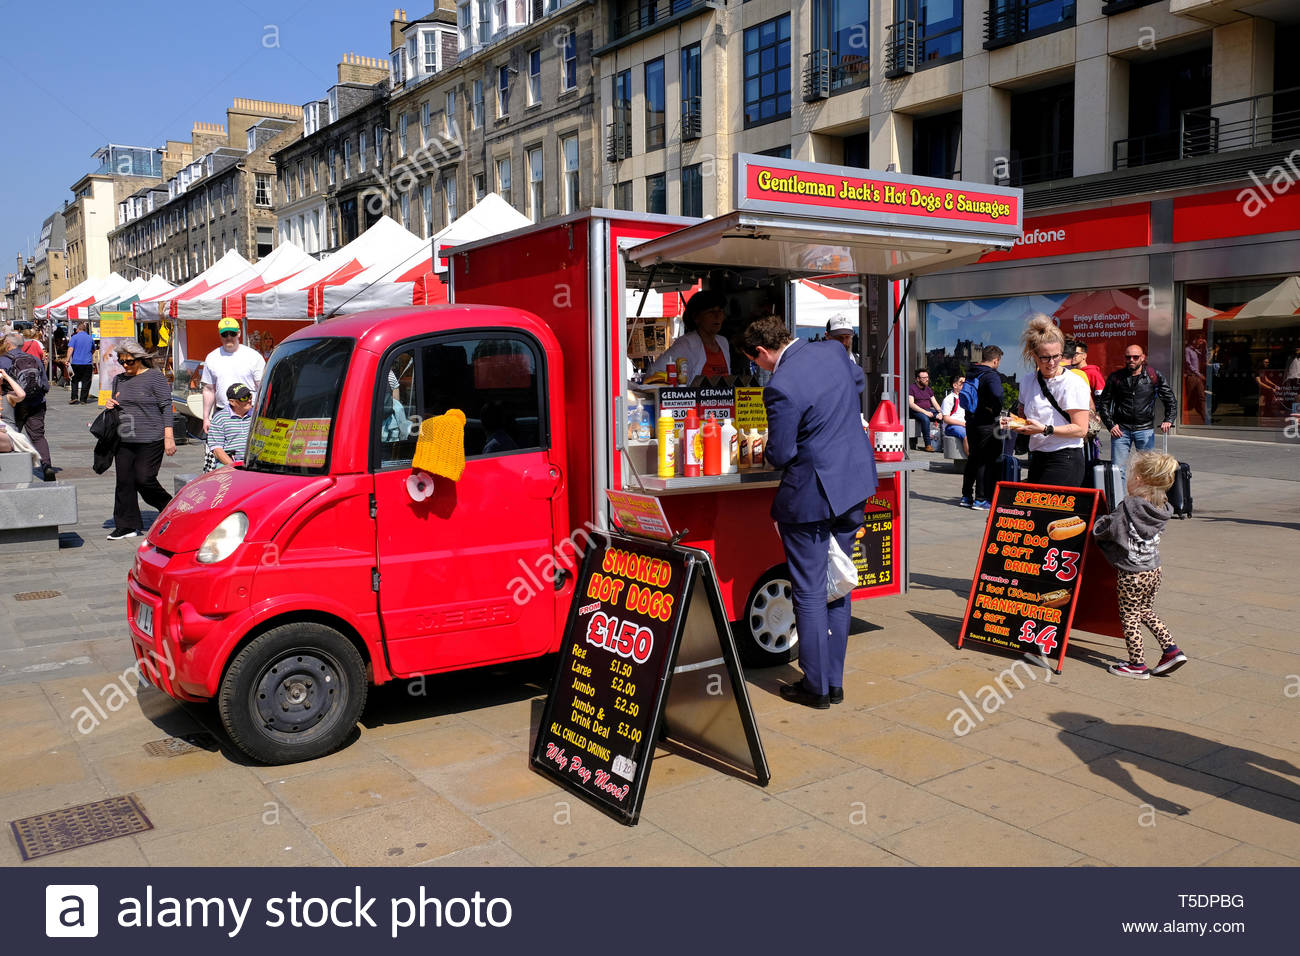 Der Gentleman Jack Hot Dogs & Wurst mobile Gastronomie auf dem Wochenmarkt, Castle Street, Edinburgh, Schottland Stockfoto